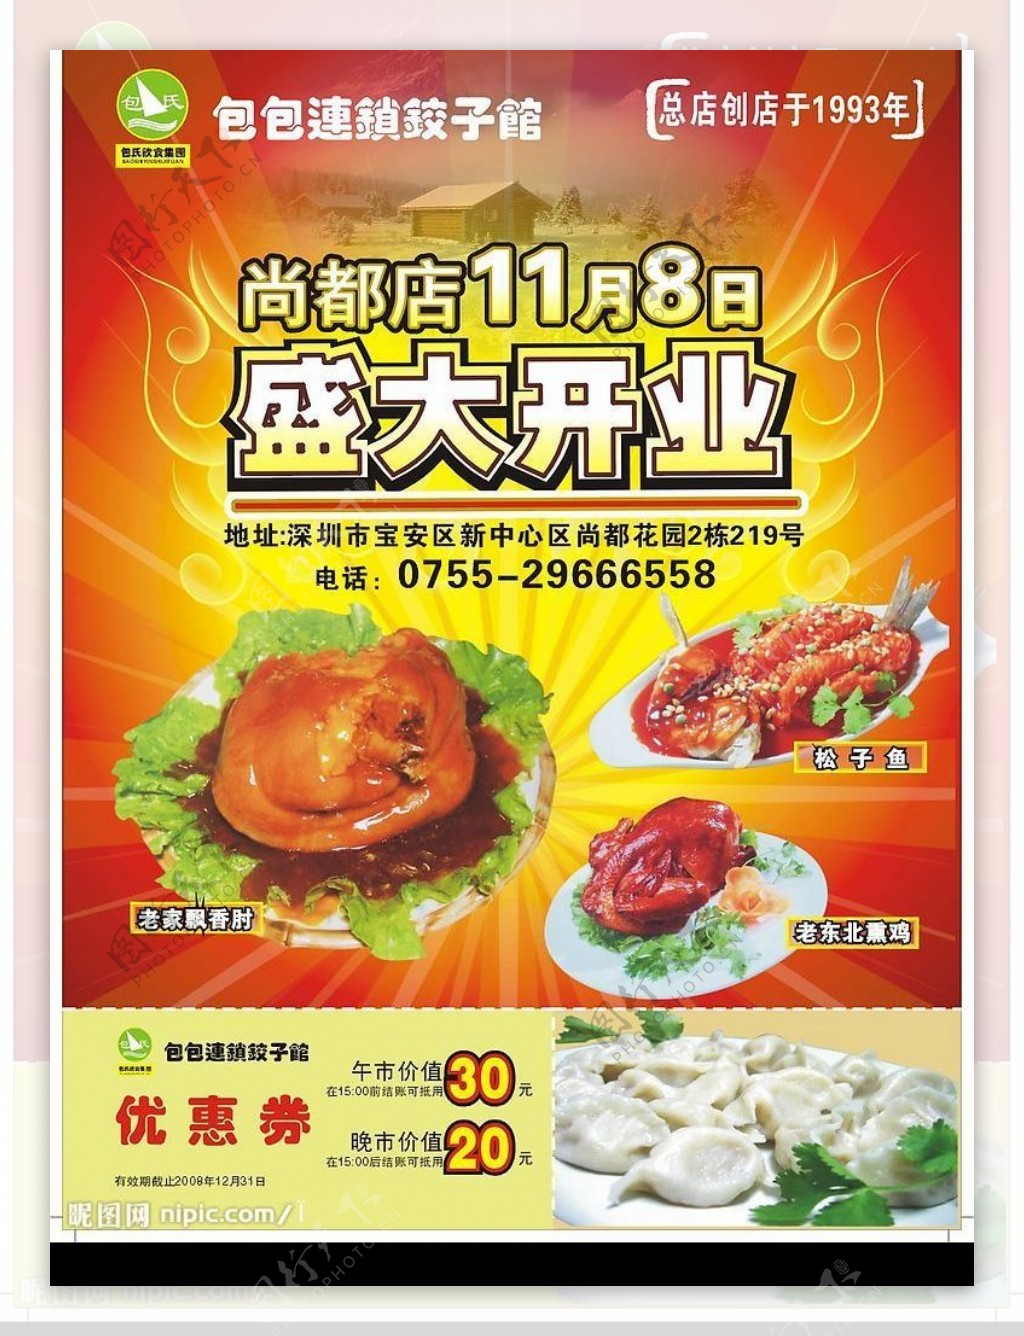 包包饺子馆开业宣传单图片